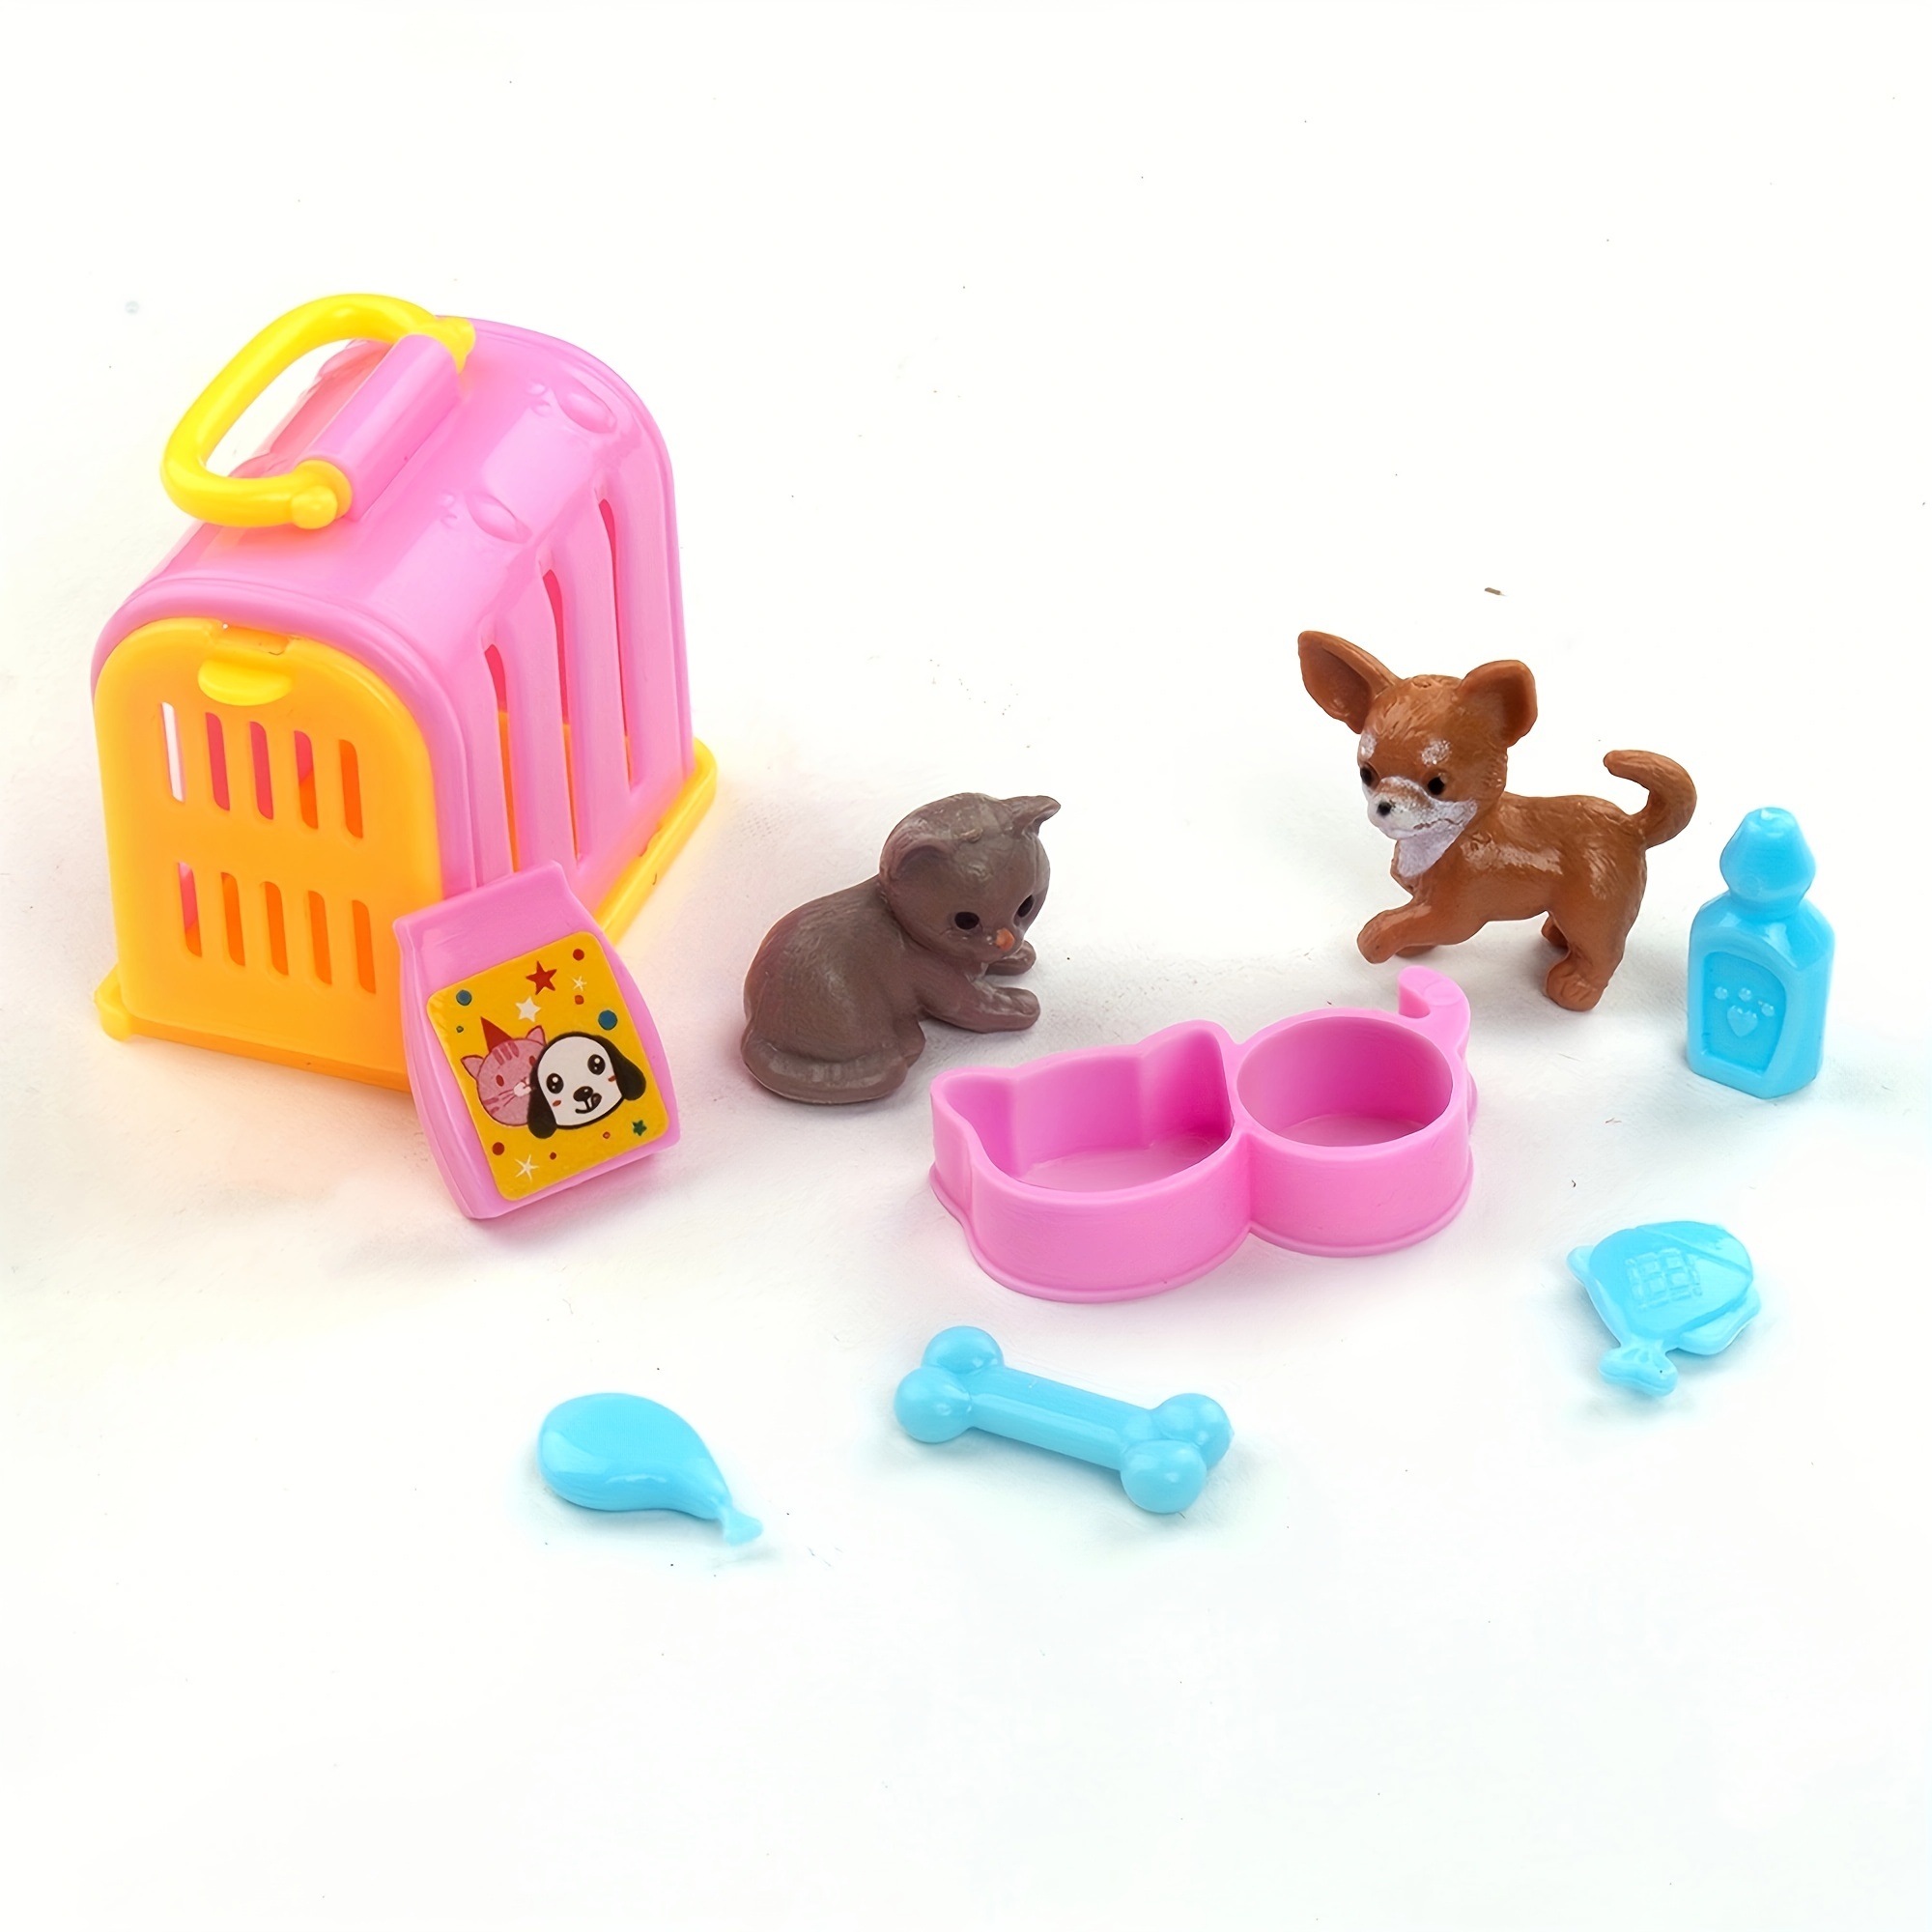 12 animaux familiers domestiques jouets figurine plastique pour jouer